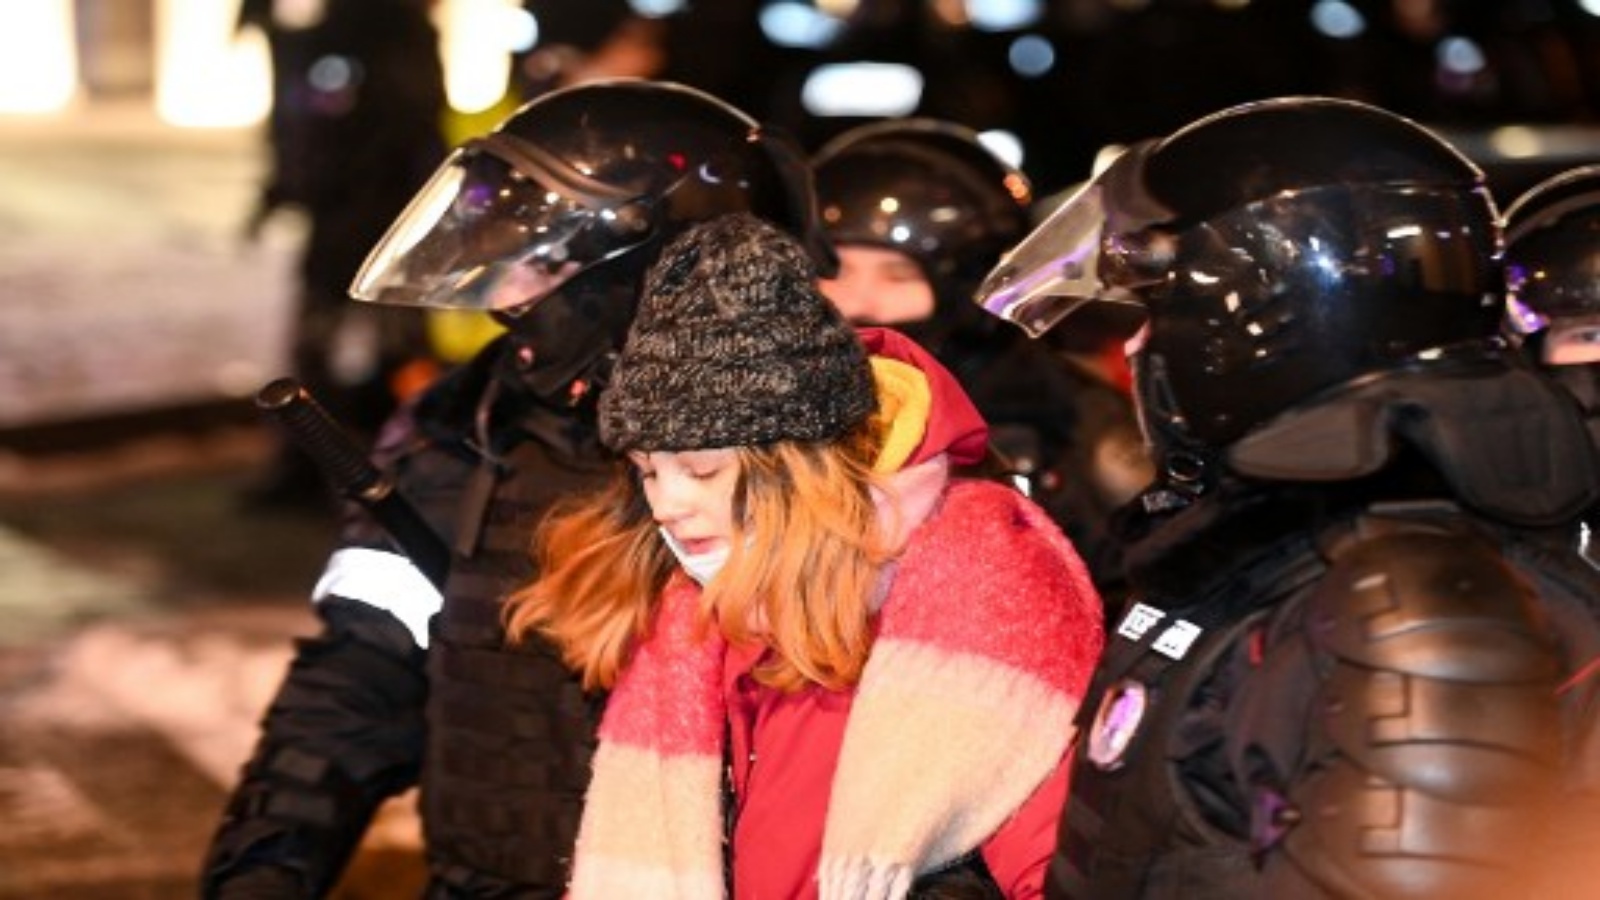 الشرطة تقتاد امرأة خلال احتجاج على قرار محكمة أمر بسجن زعيم المعارضة الروسي أليكسي نافالني لما يقرب من ثلاث سنوات ، في وسط موسكو في 2 فبراير 2021.